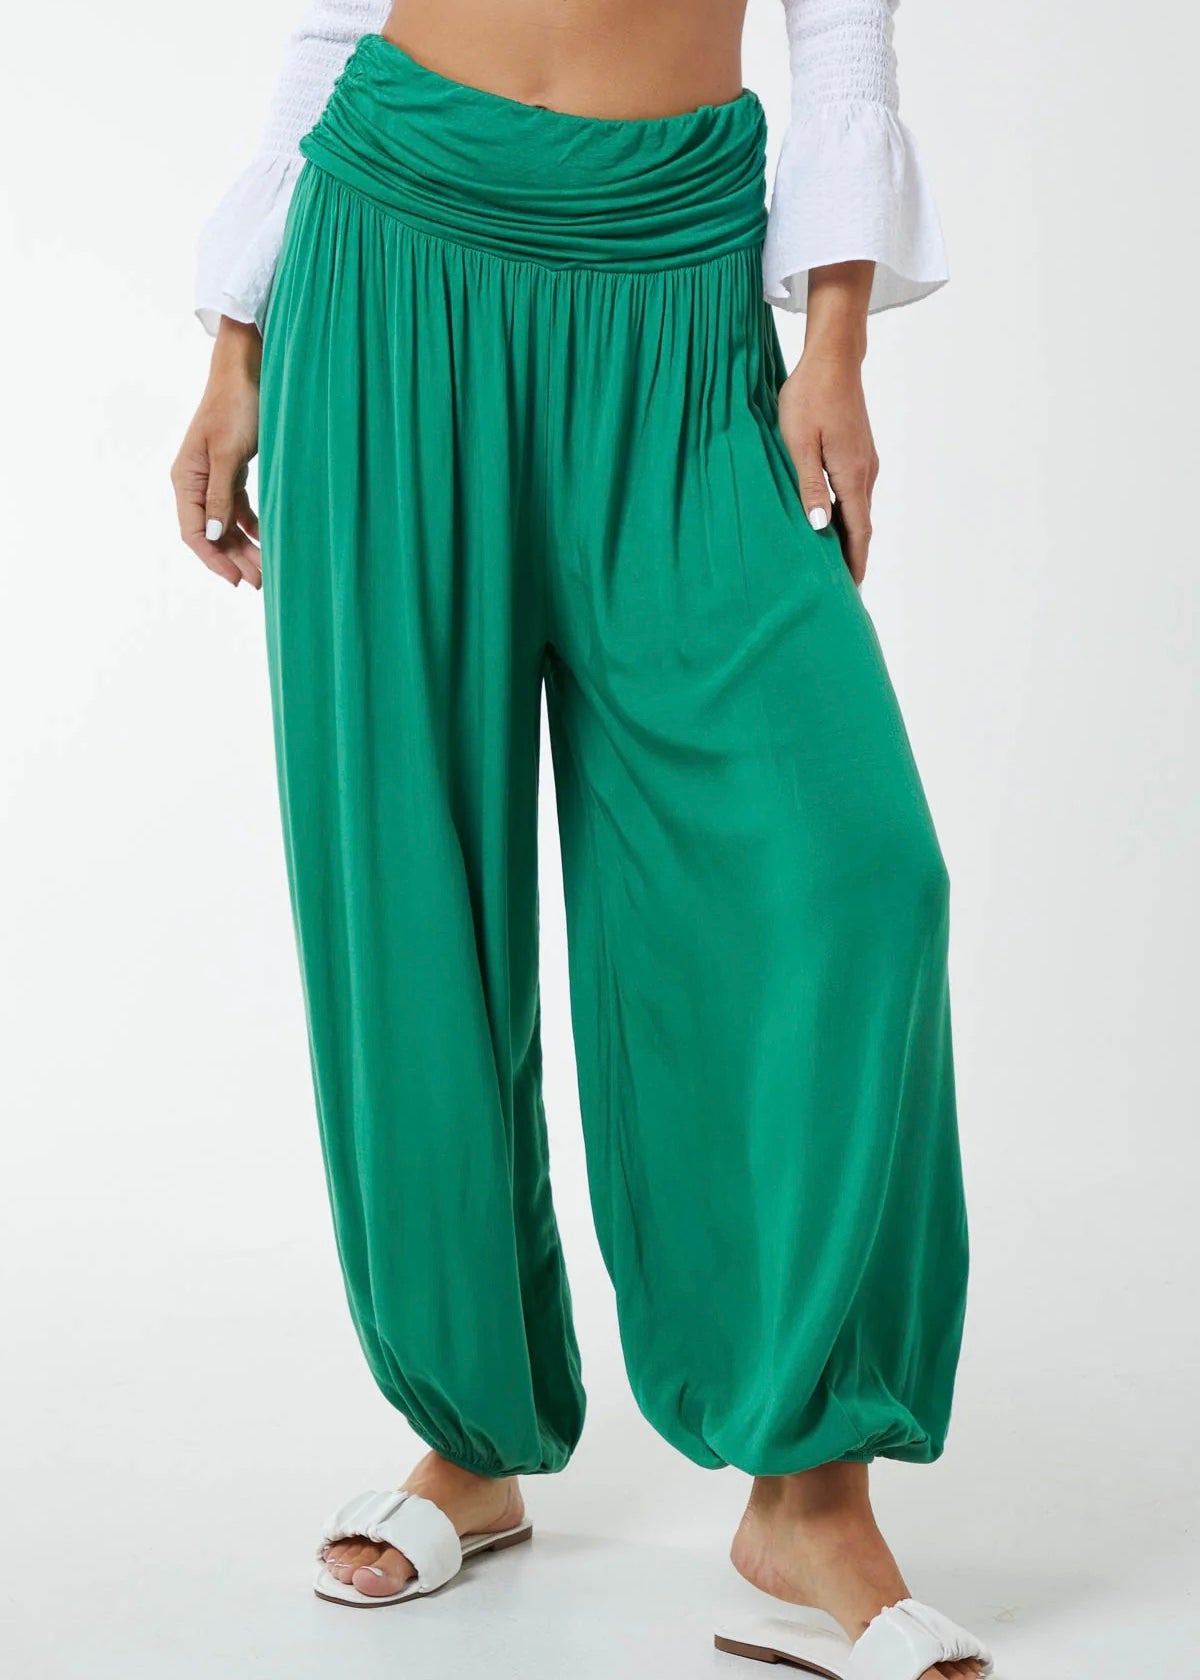 Sands - Harem Trousers / Plain Colours